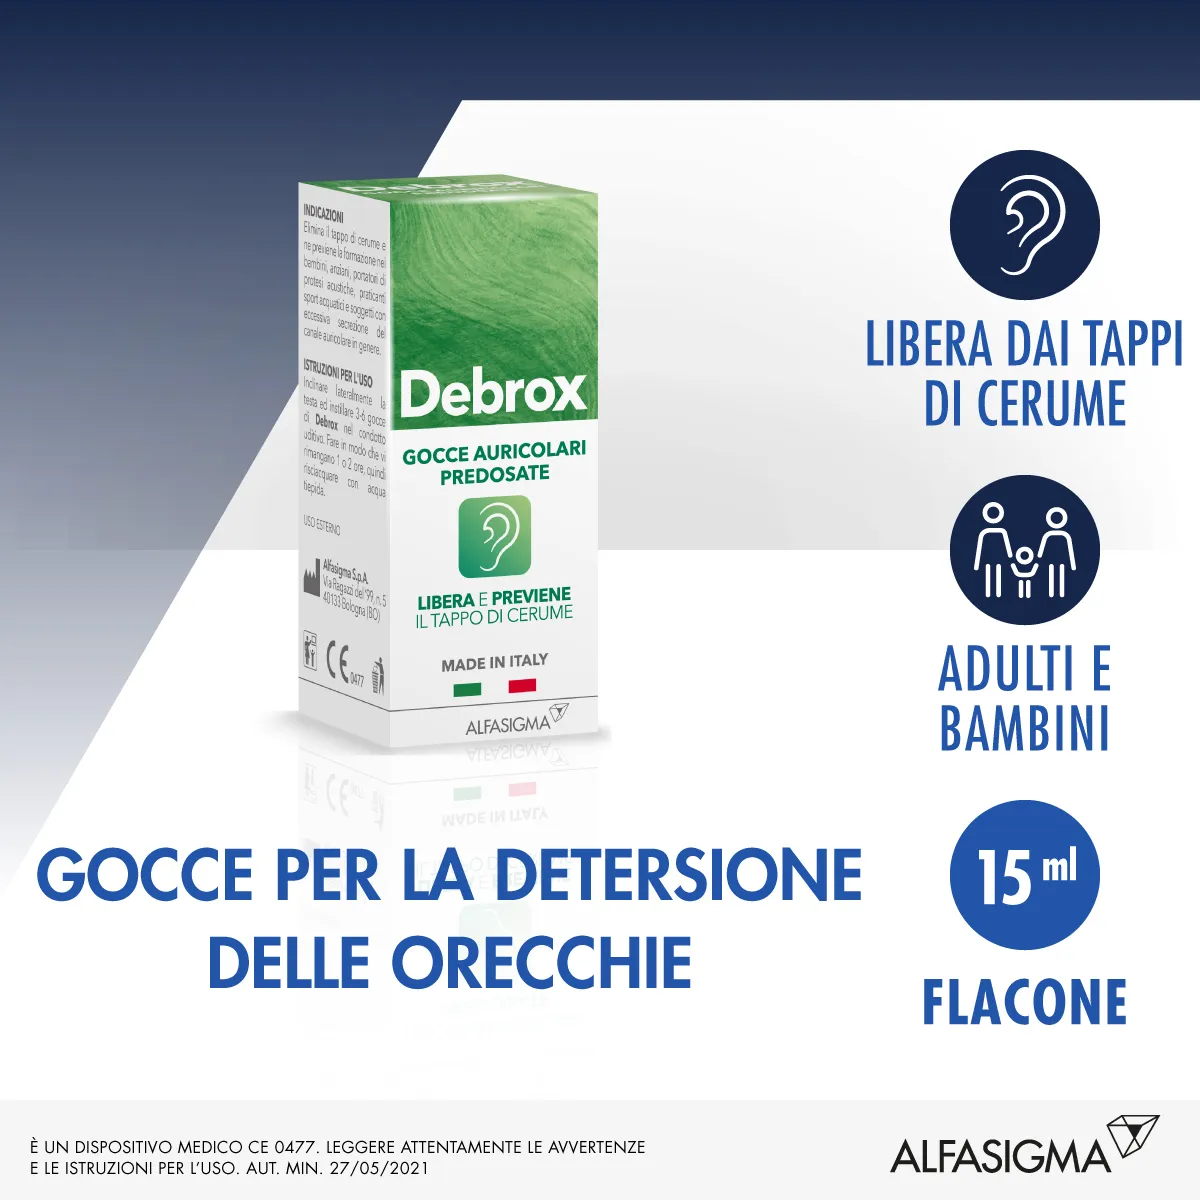 Debrox Gocce Auricolari Predosate 15 ml Contrasta Tappi di Cerume